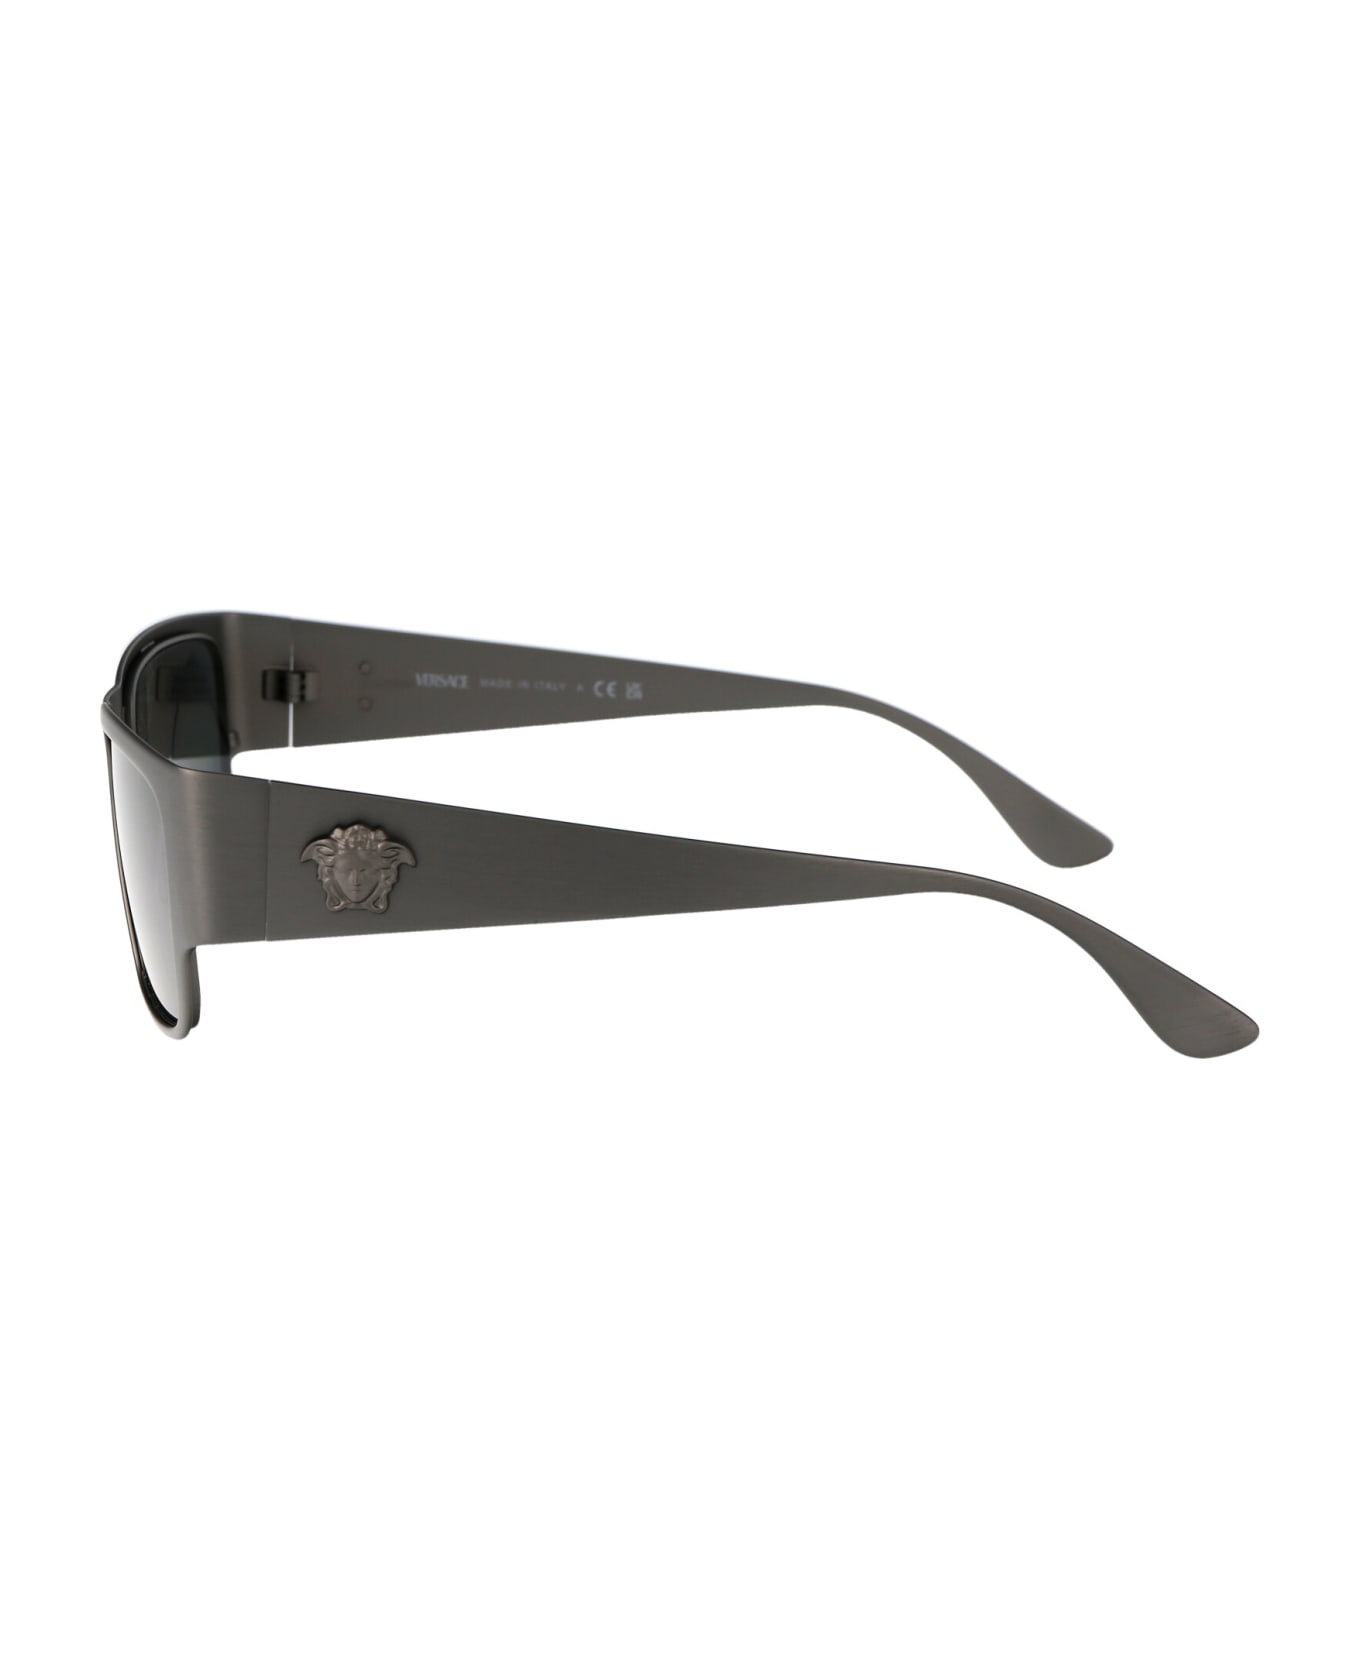 Versace Eyewear 0ve2262 Sunglasses - 126287 Gunmetal